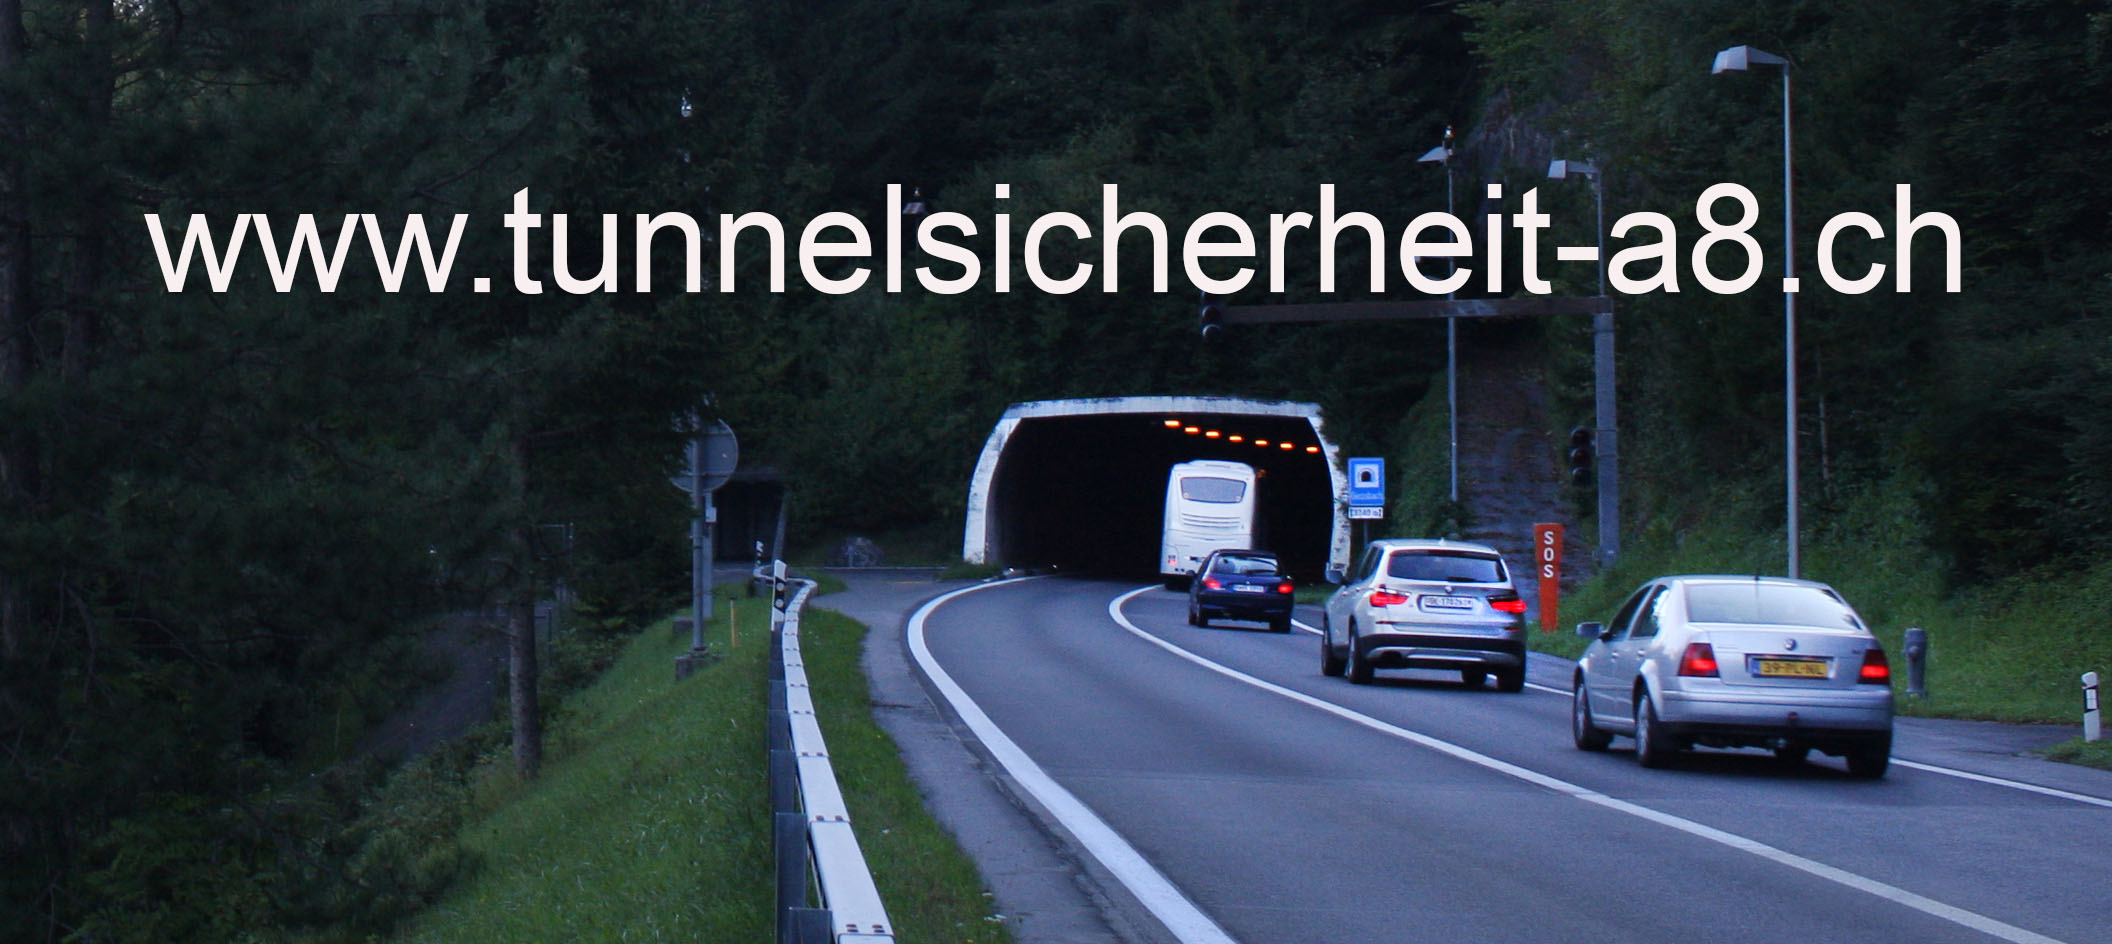 www.tunnelsicherheit-a8.ch